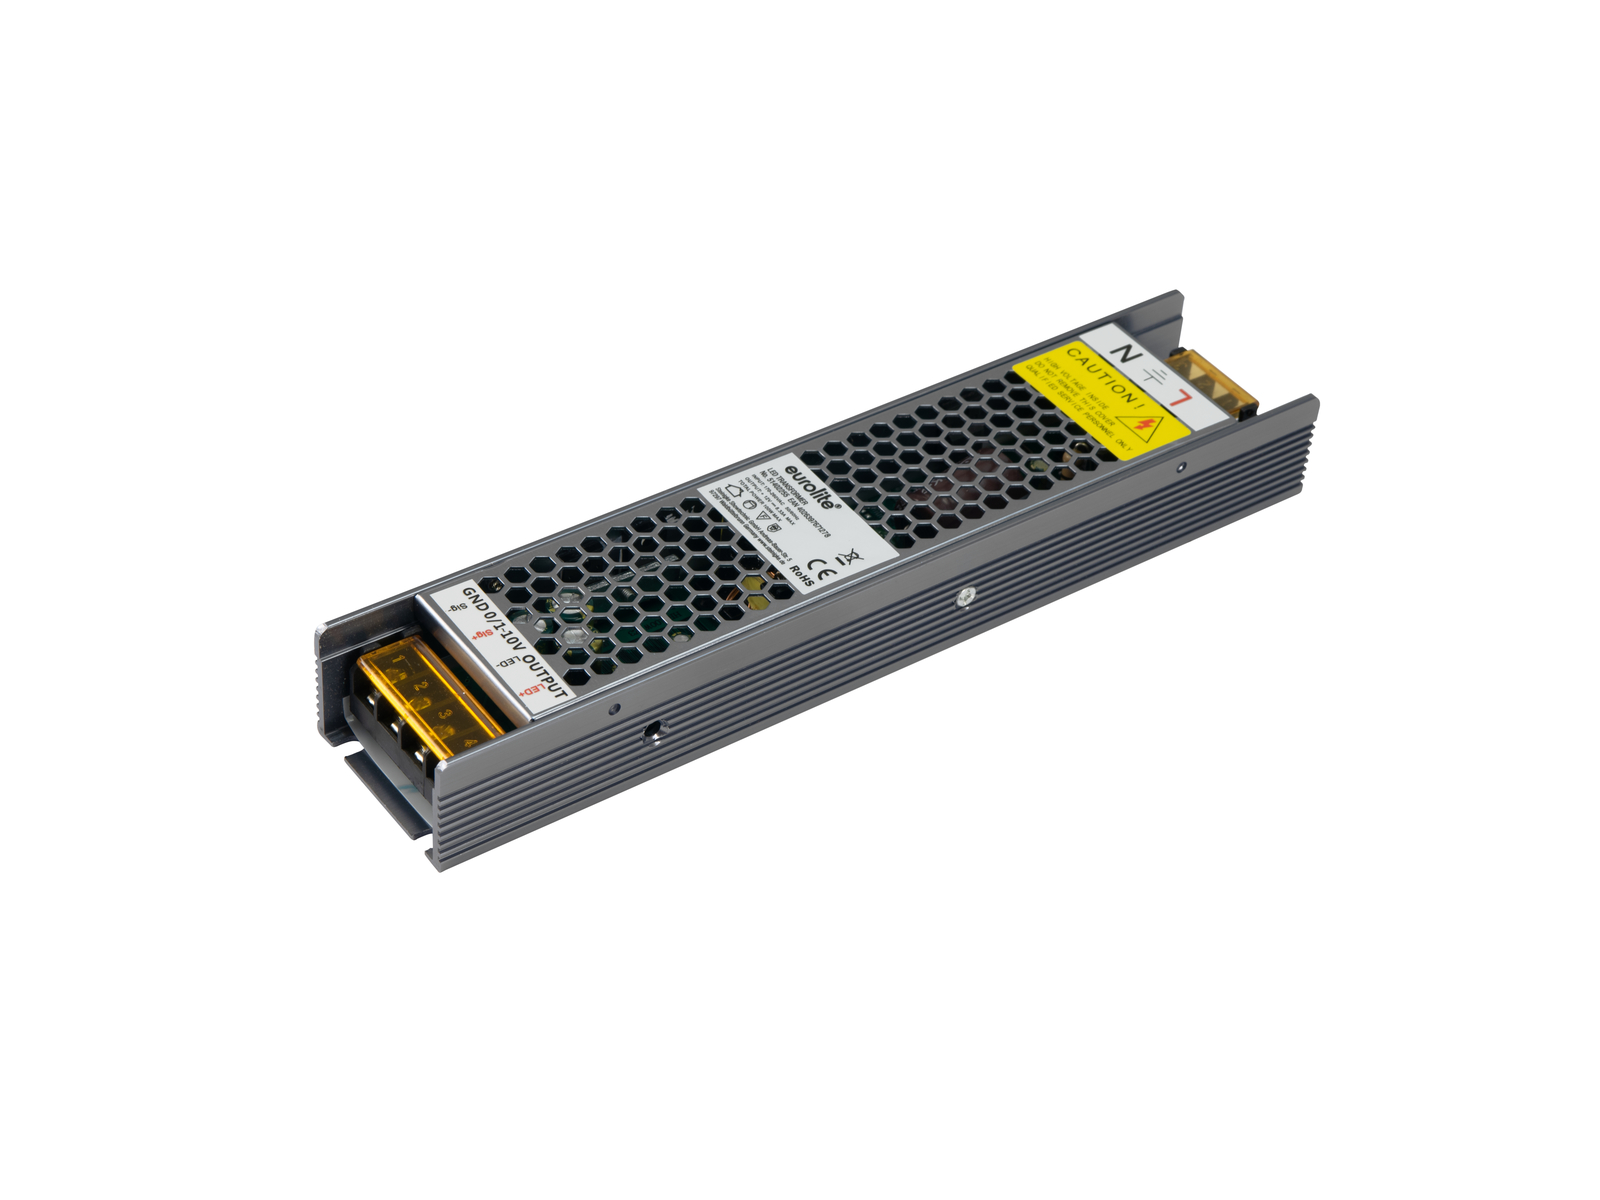 EUROLITE ESN 7x80 USB LAN LED-Laufschrift - günstig bei LTT